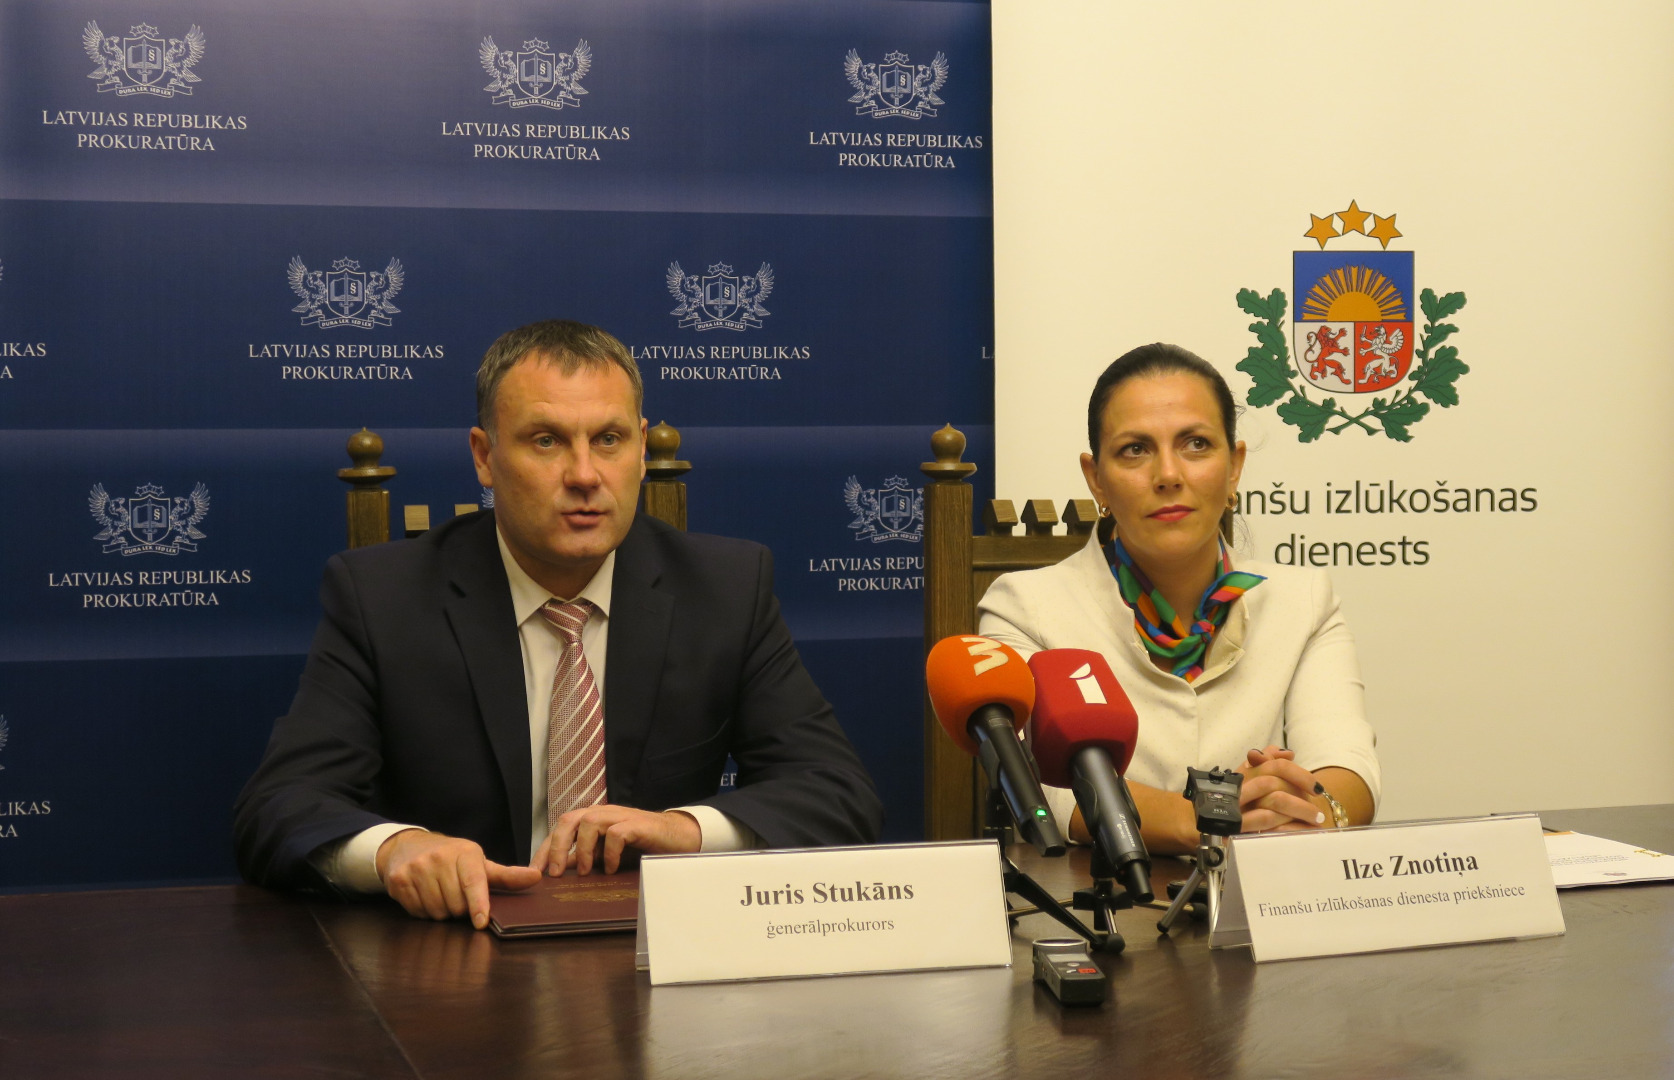 Ģenerālprokurora Jura Stukāna tikšanās ar Finanšu izmeklēšanas dienesta priekšnieci Ilzi Znotiņu - 